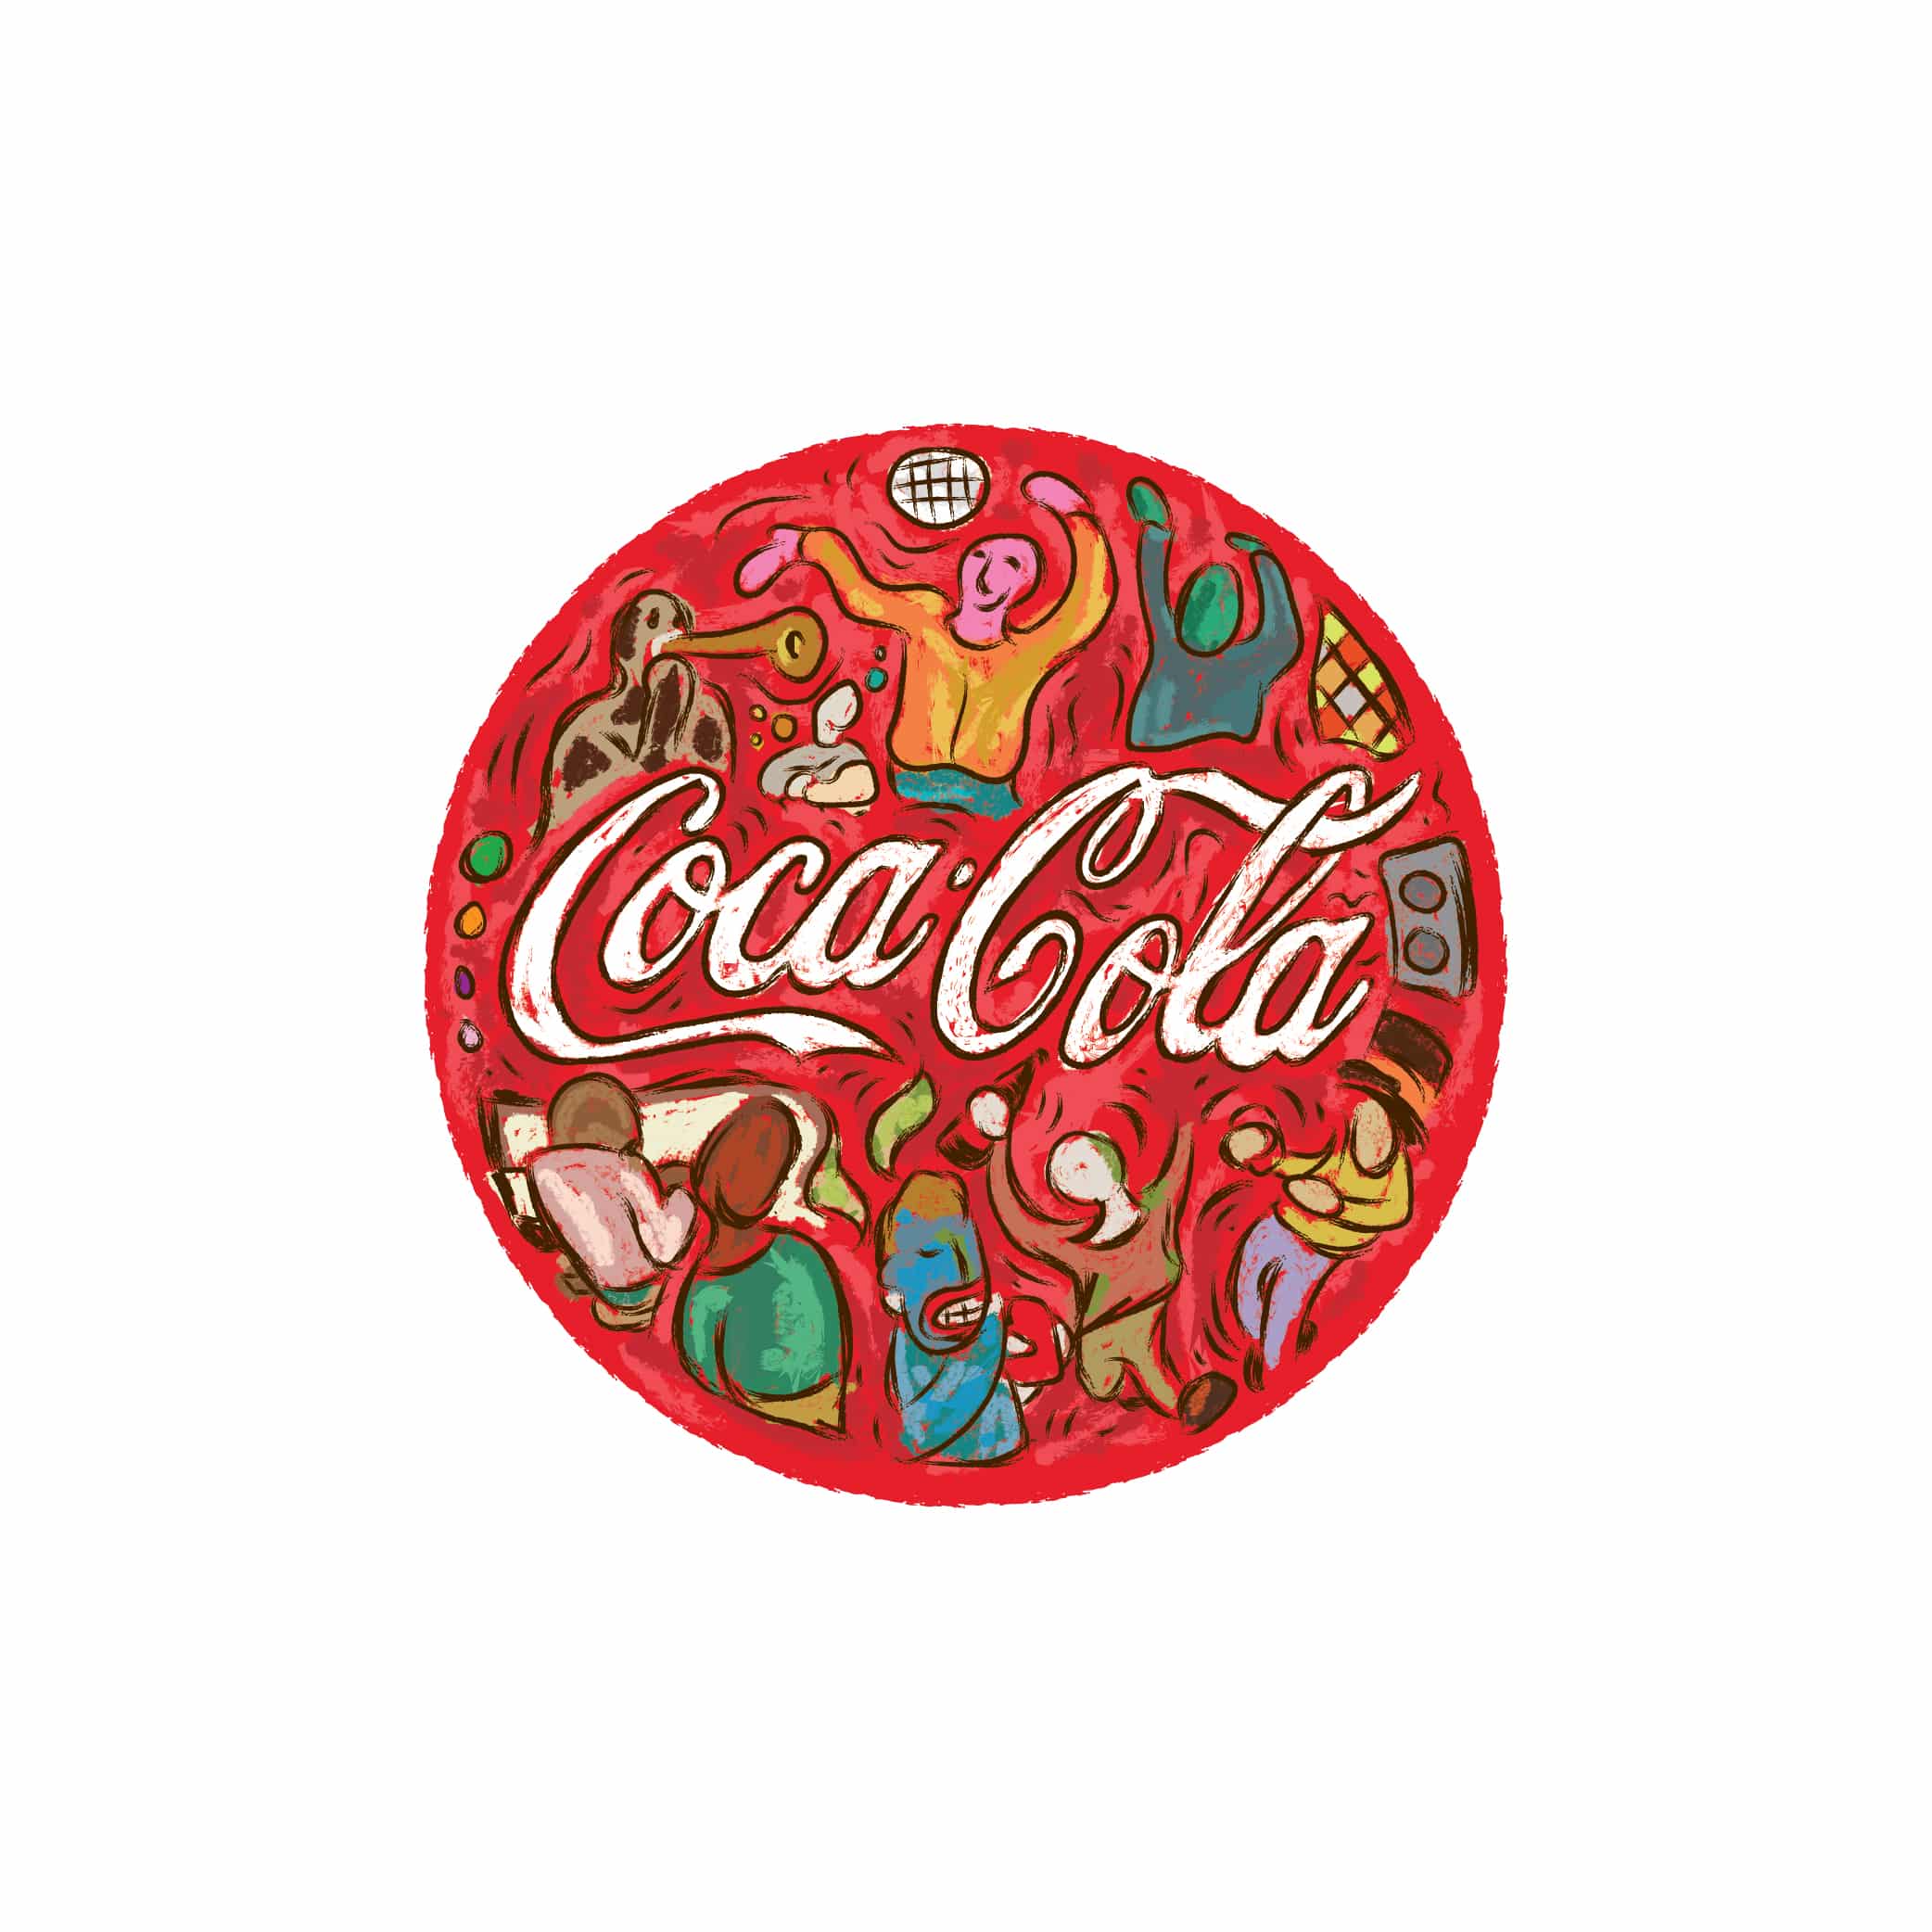 Für die 99designs Challenge illustrierte der Designer Glerm Rubini das Cocoa Cola Logo von Hand mit verschiedenen Figuren in Delaneys Stil. 